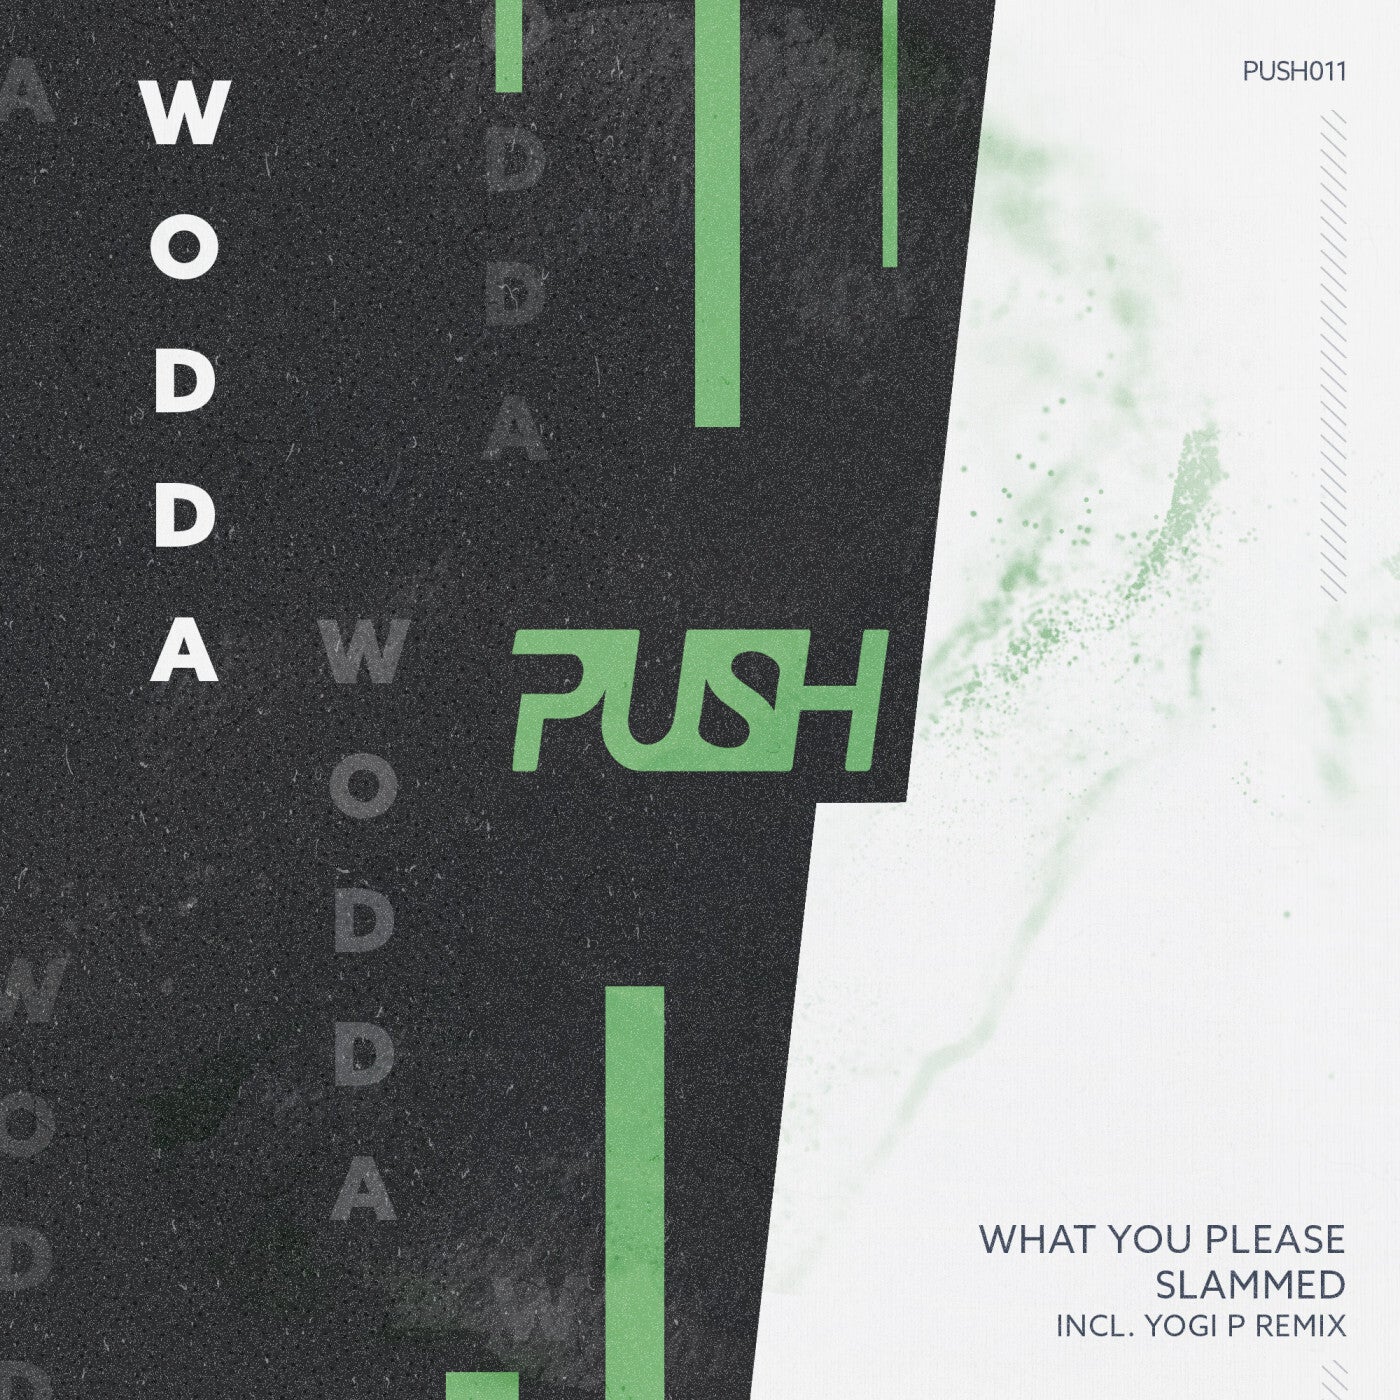 Wodda – What You Please [PUSH011]